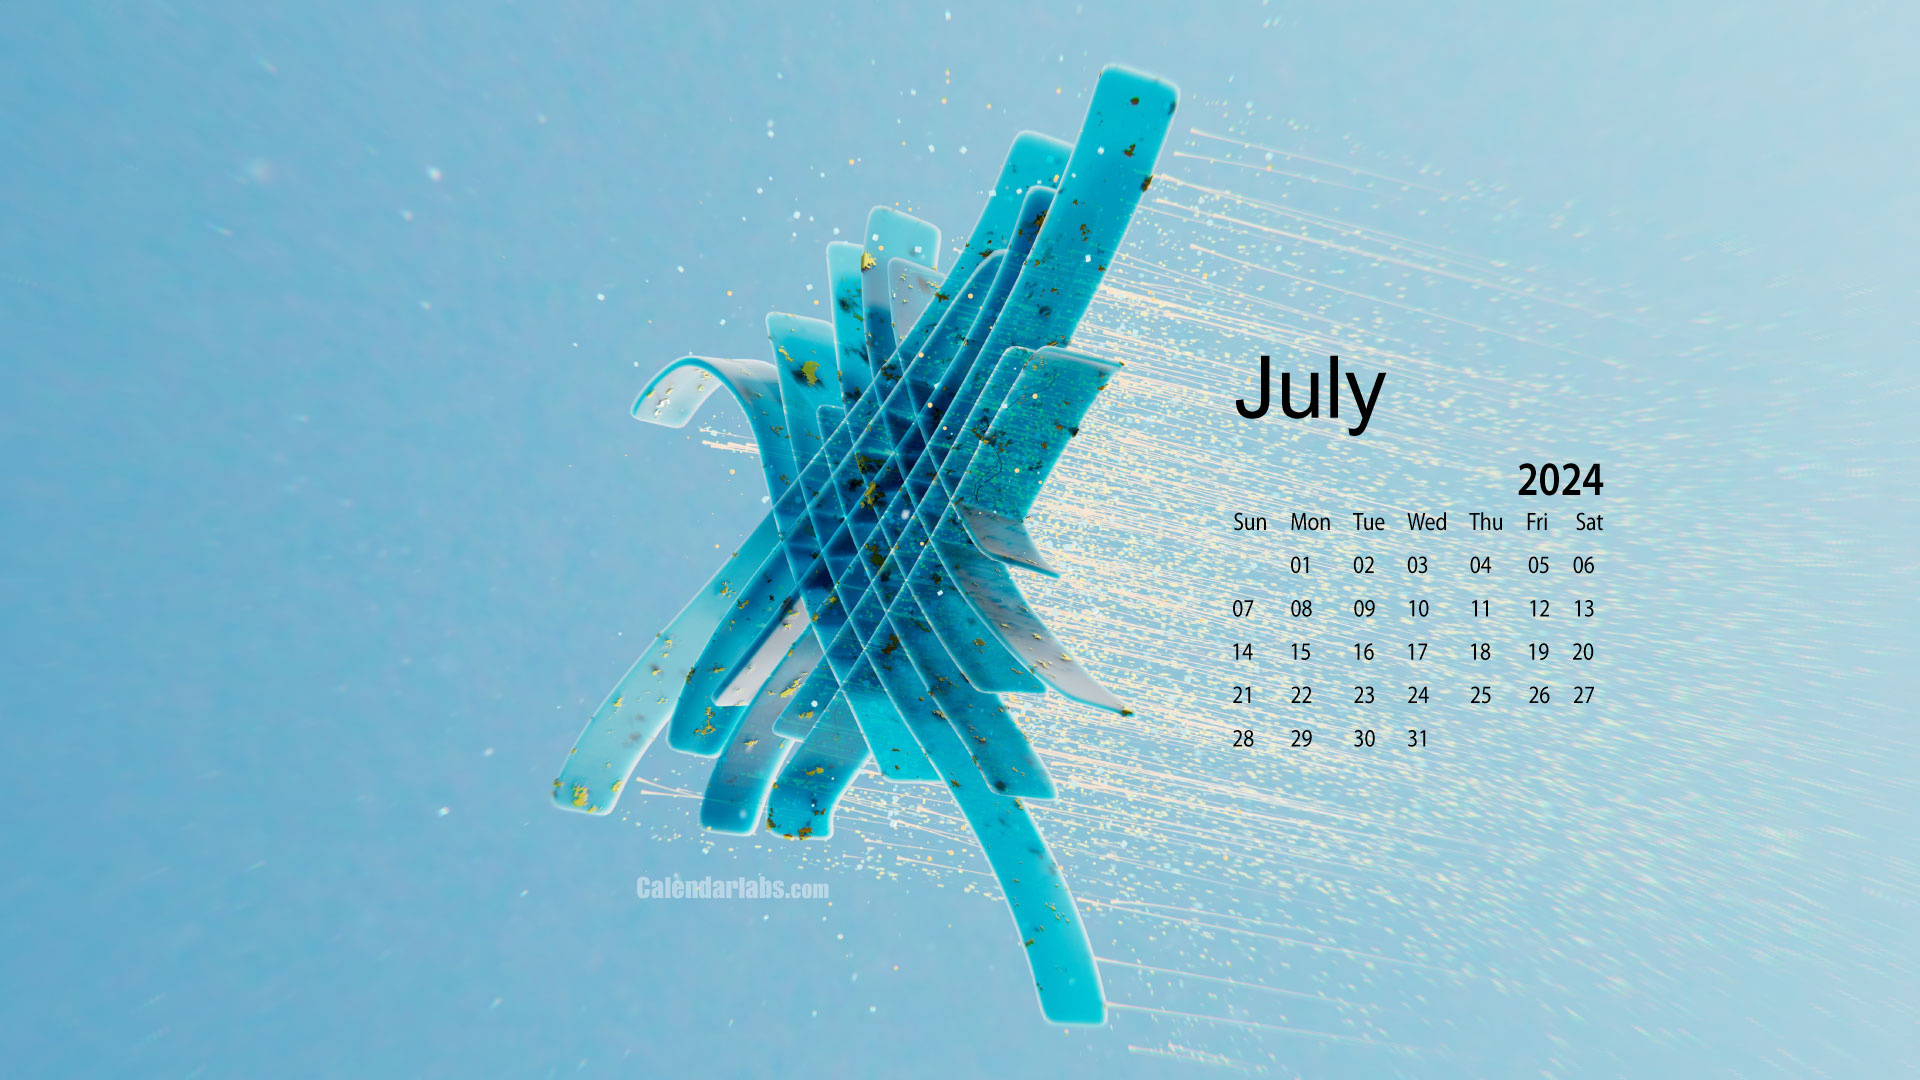 July 2024 Desktop Wallpaper Calendar - Calendarlabs throughout Calendar Wallpaper July 2024